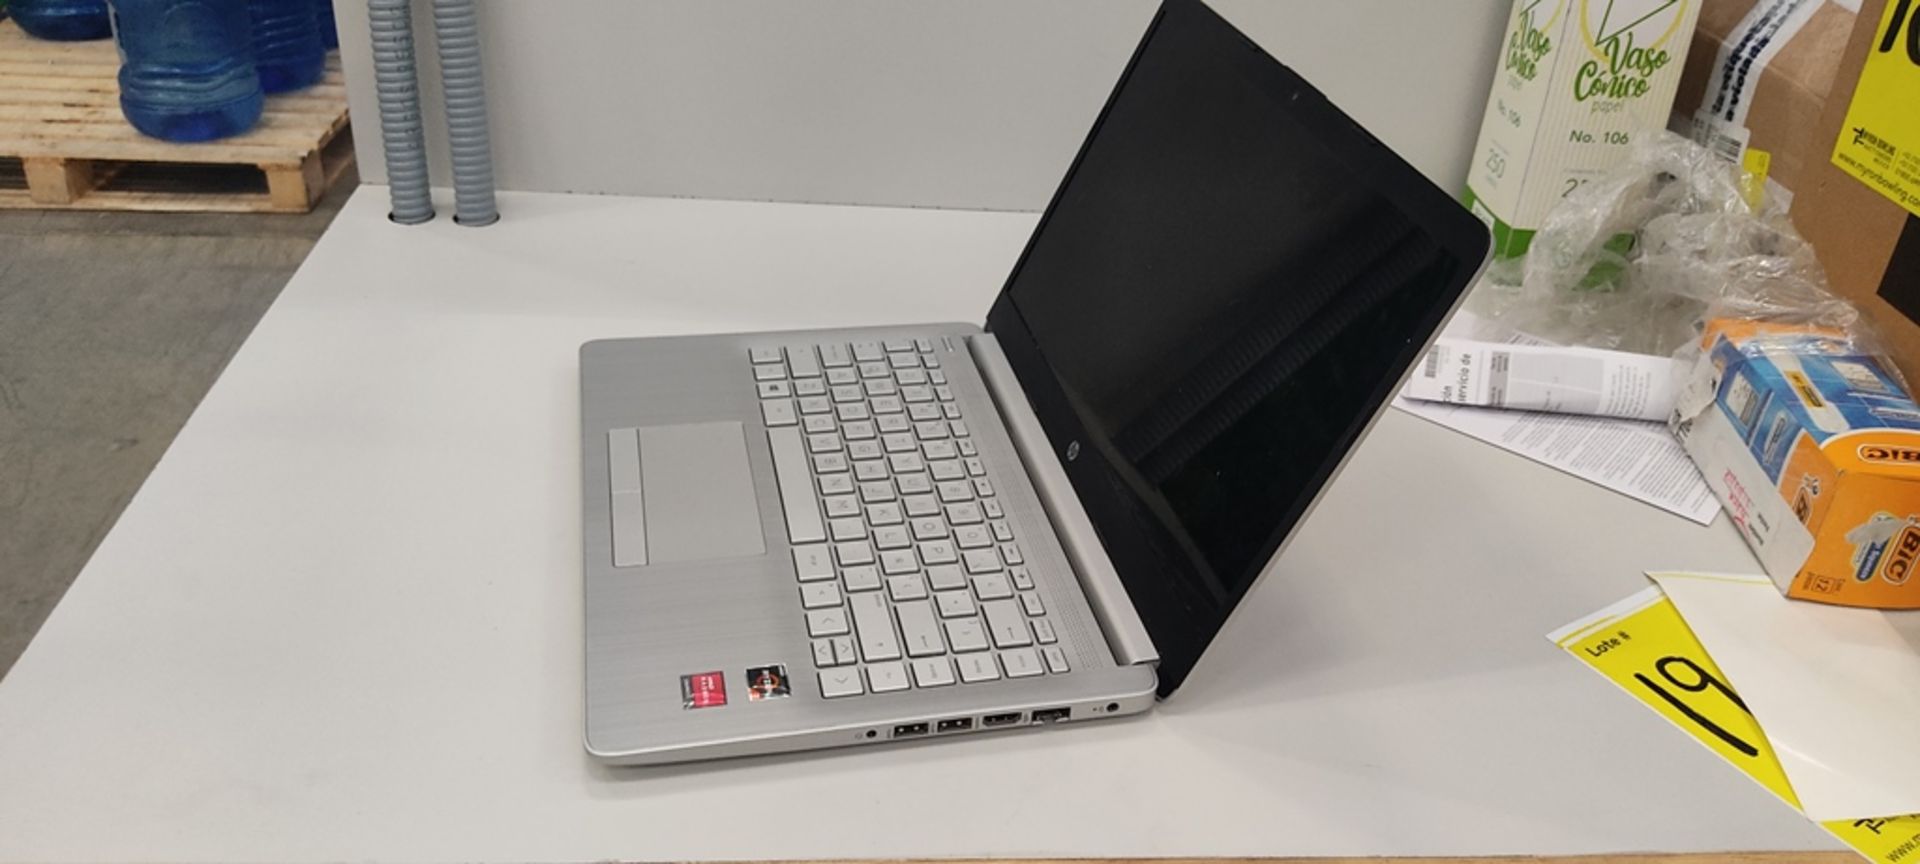 1 Computadora tipo laptop Marca Hp, Modelo RTL8821CE, Serie 14-DK1508La, Color Gris, unidad de esta - Image 6 of 12